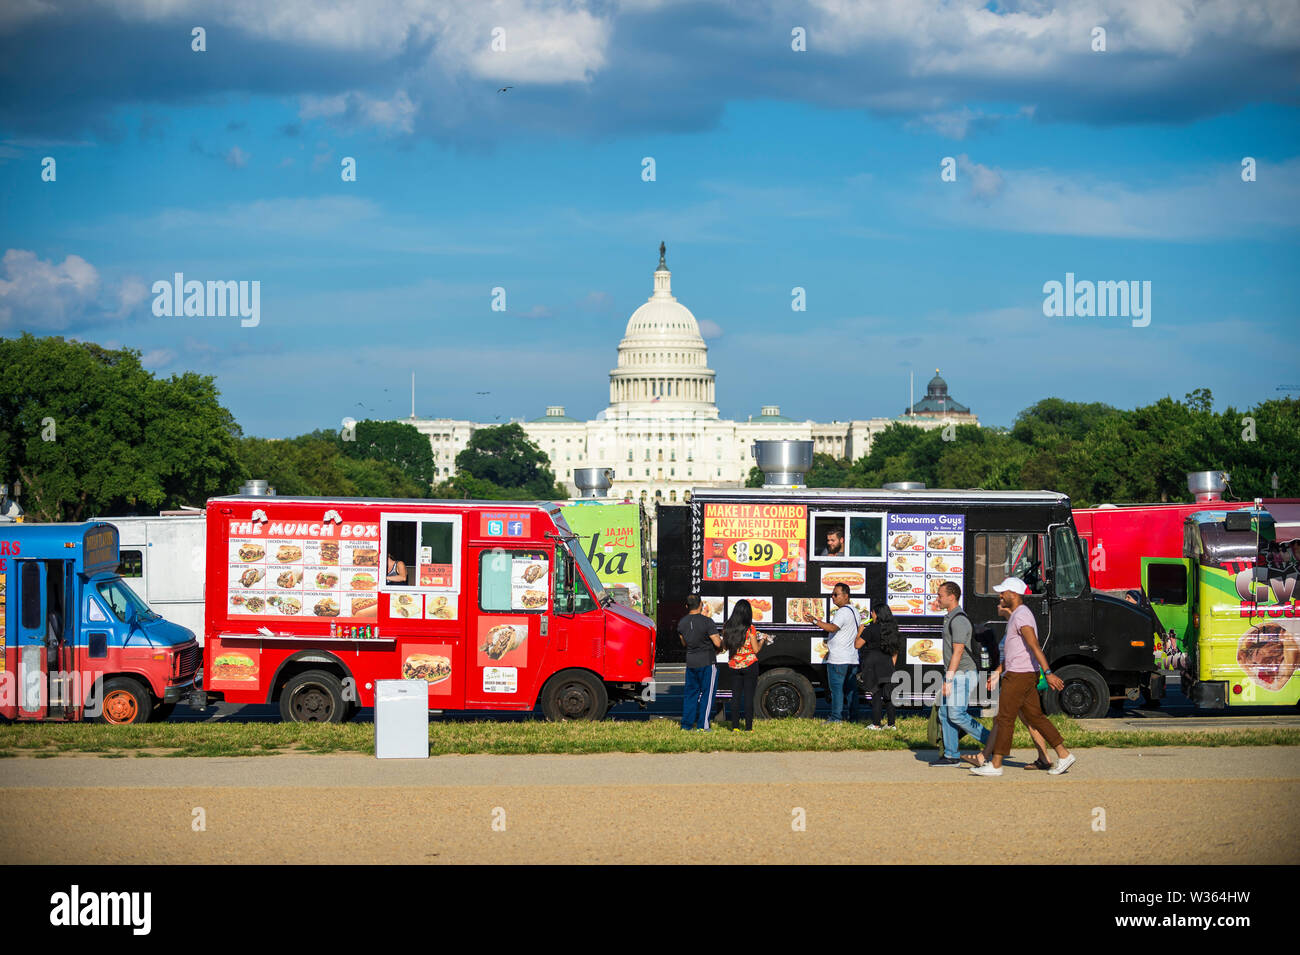 WASHINGTON, DC - AUGUST 2018: Food Trucks verkauft eine Vielzahl von internationalen Street Food Line Up auf der Mall vor dem Kapitol Gebäude. Stockfoto